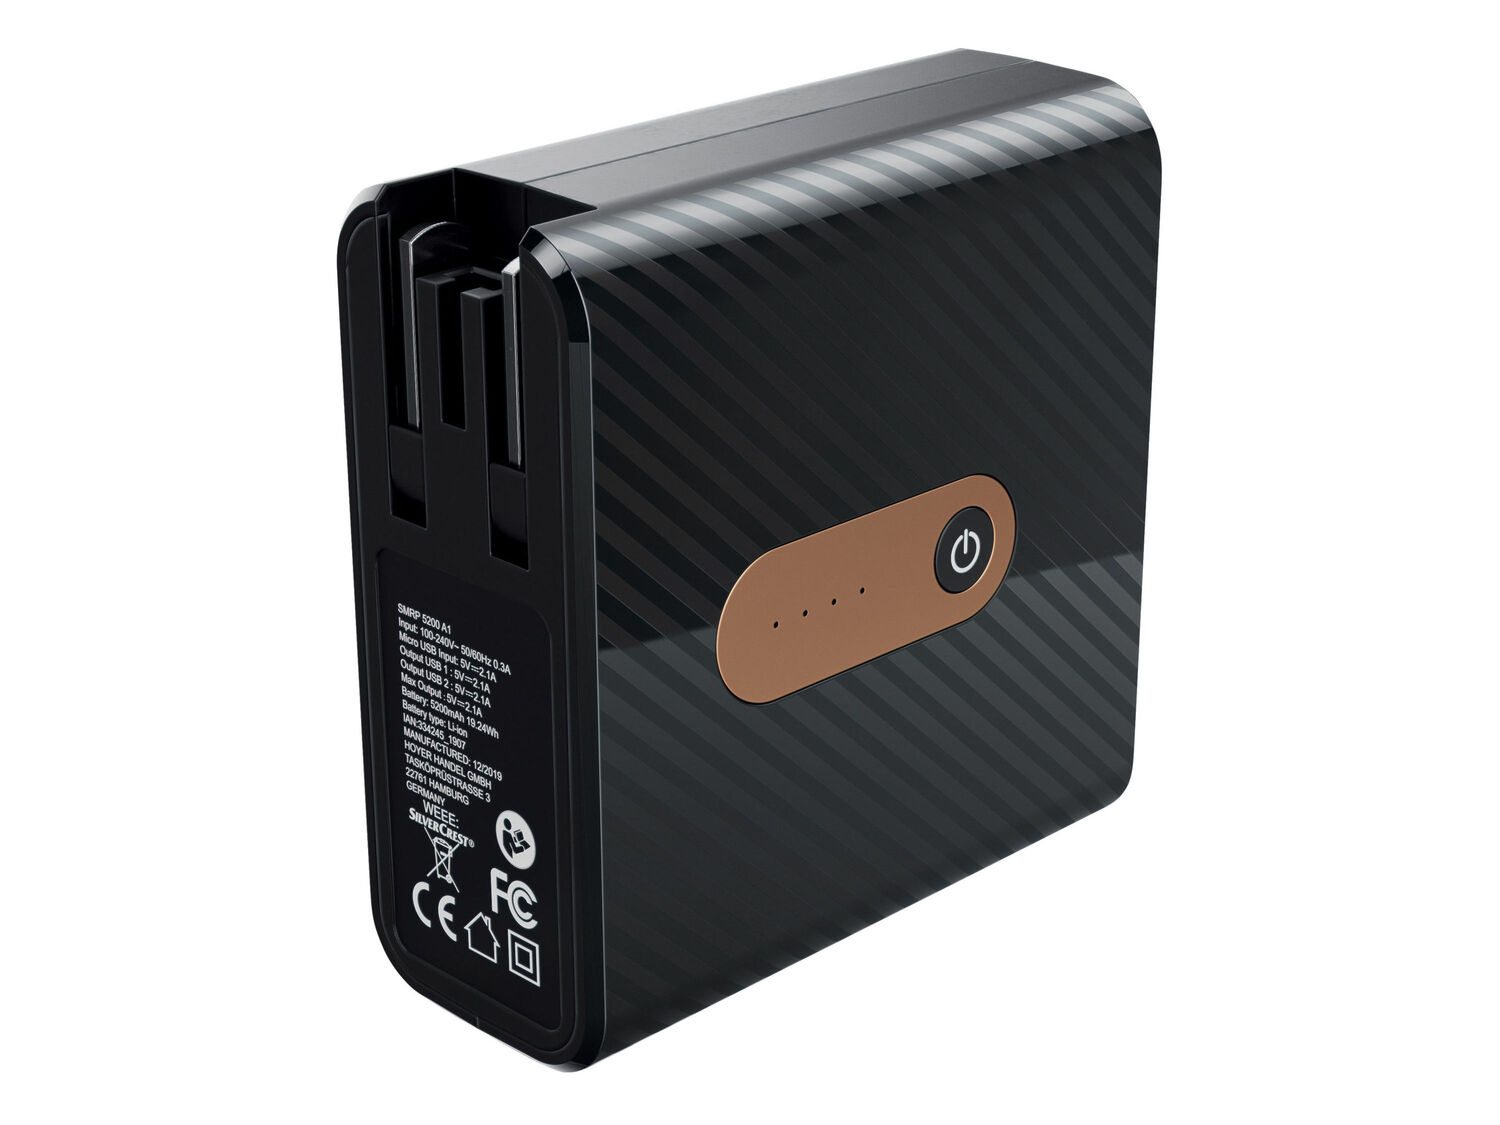 Caricabatterie da viaggio con powerbank Silvercrest SMRP 5200 A1, prezzo 17.99 € ...